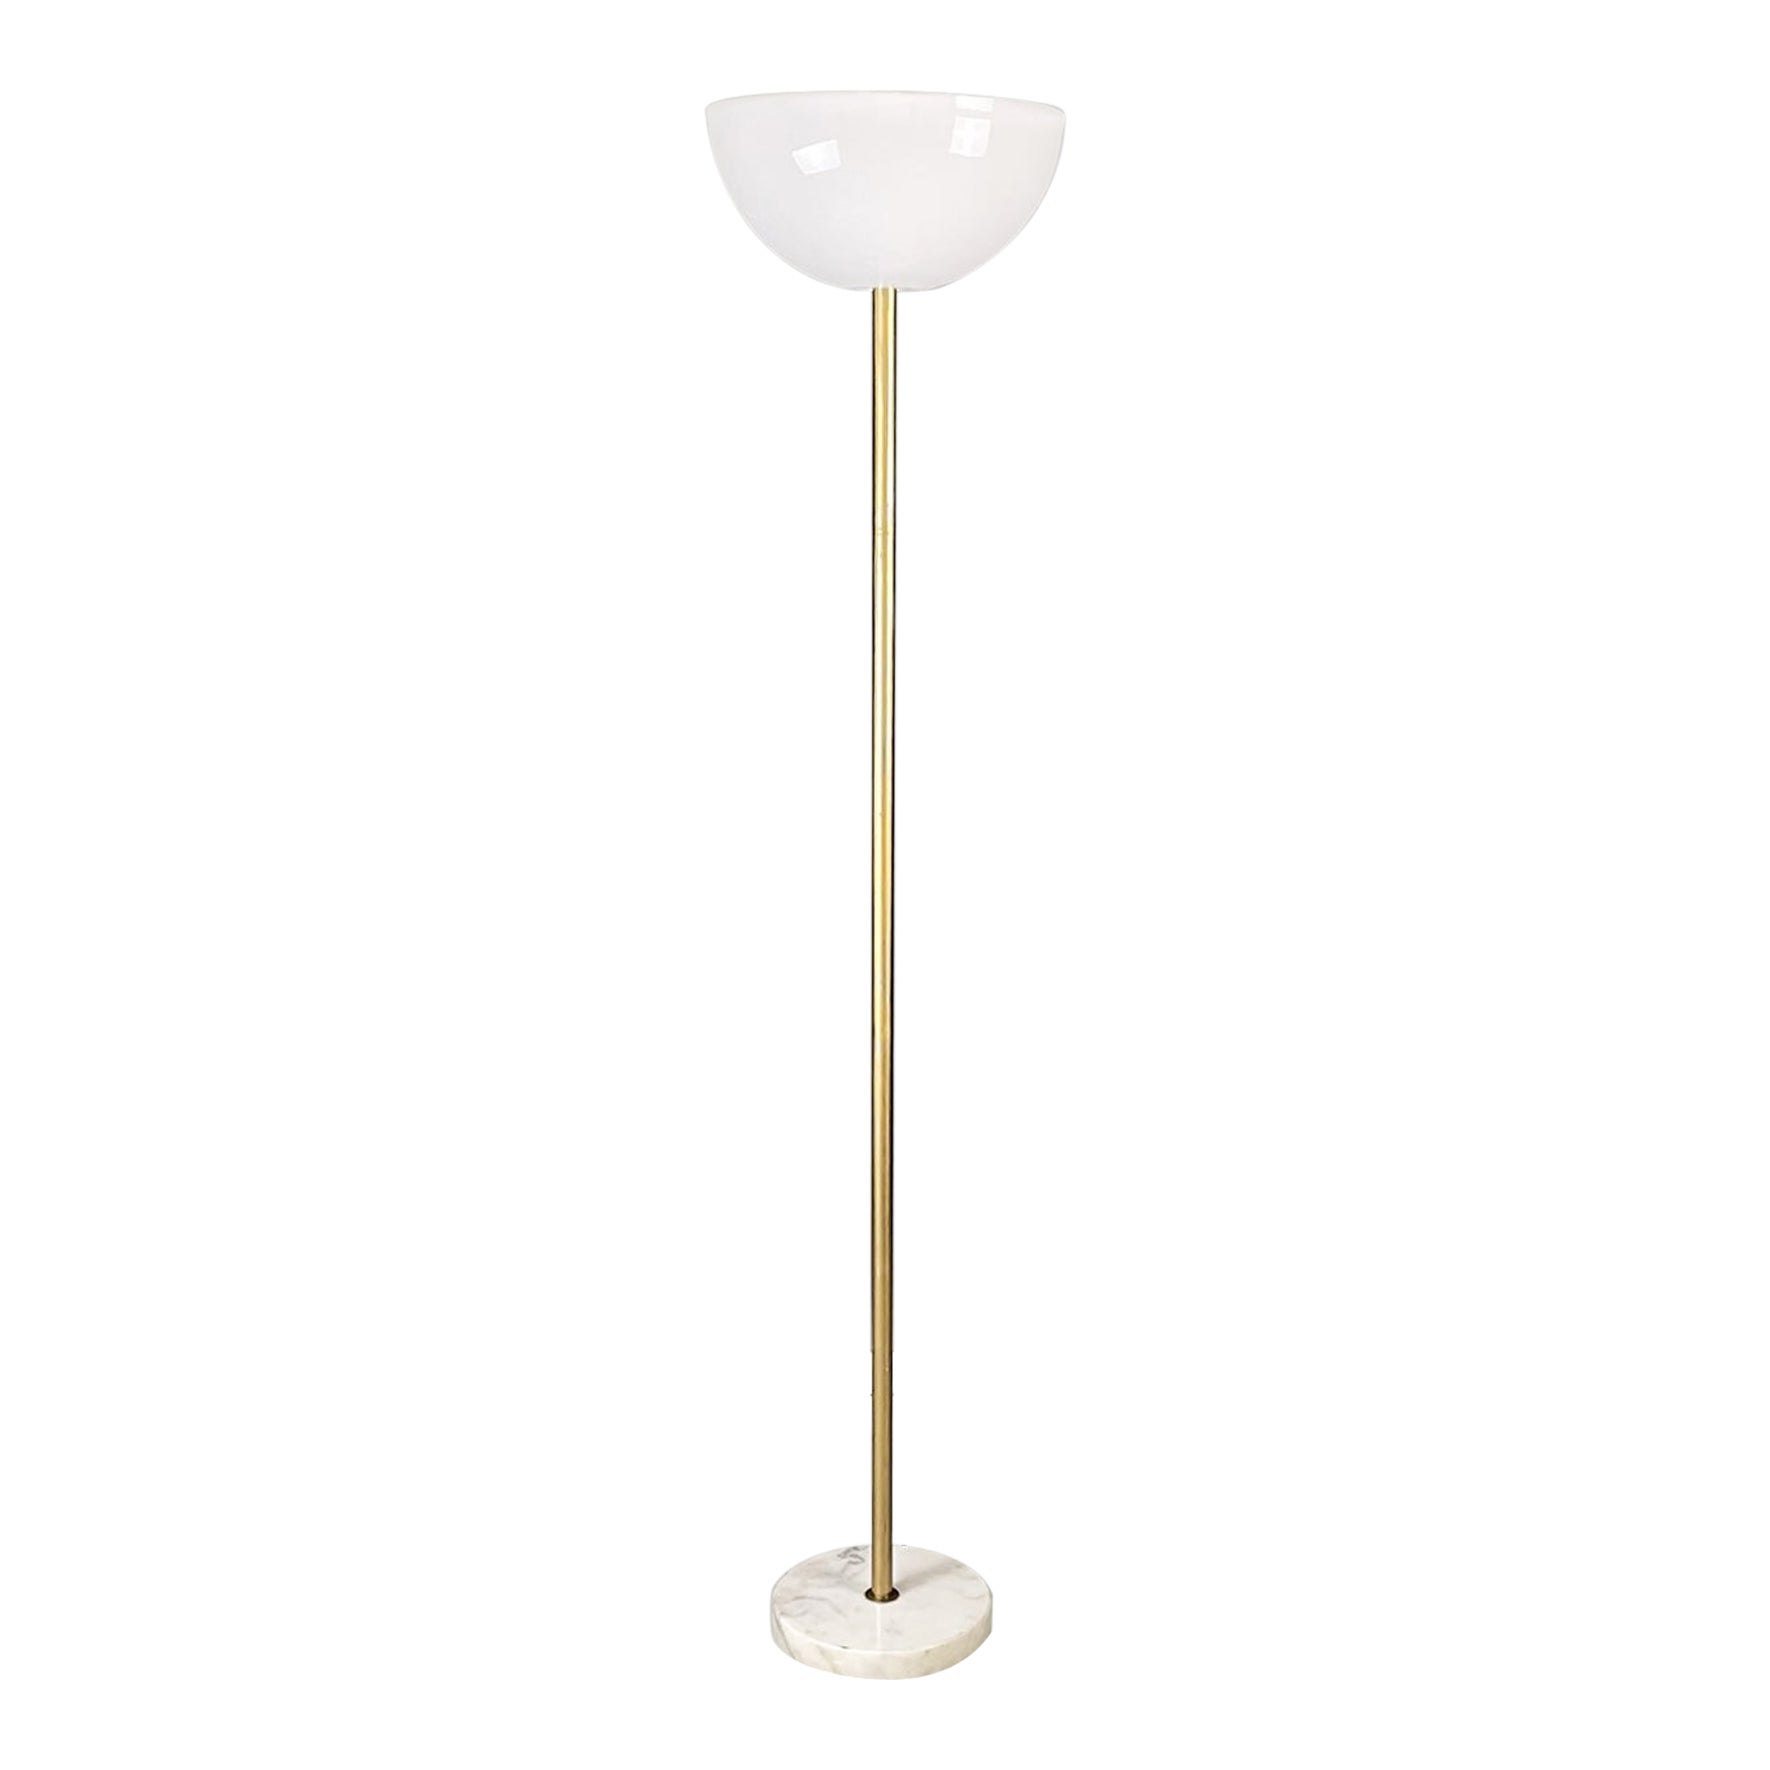 Italian Modern Floor lamp in opaline plexiglass, marble and golden metal, 1970s